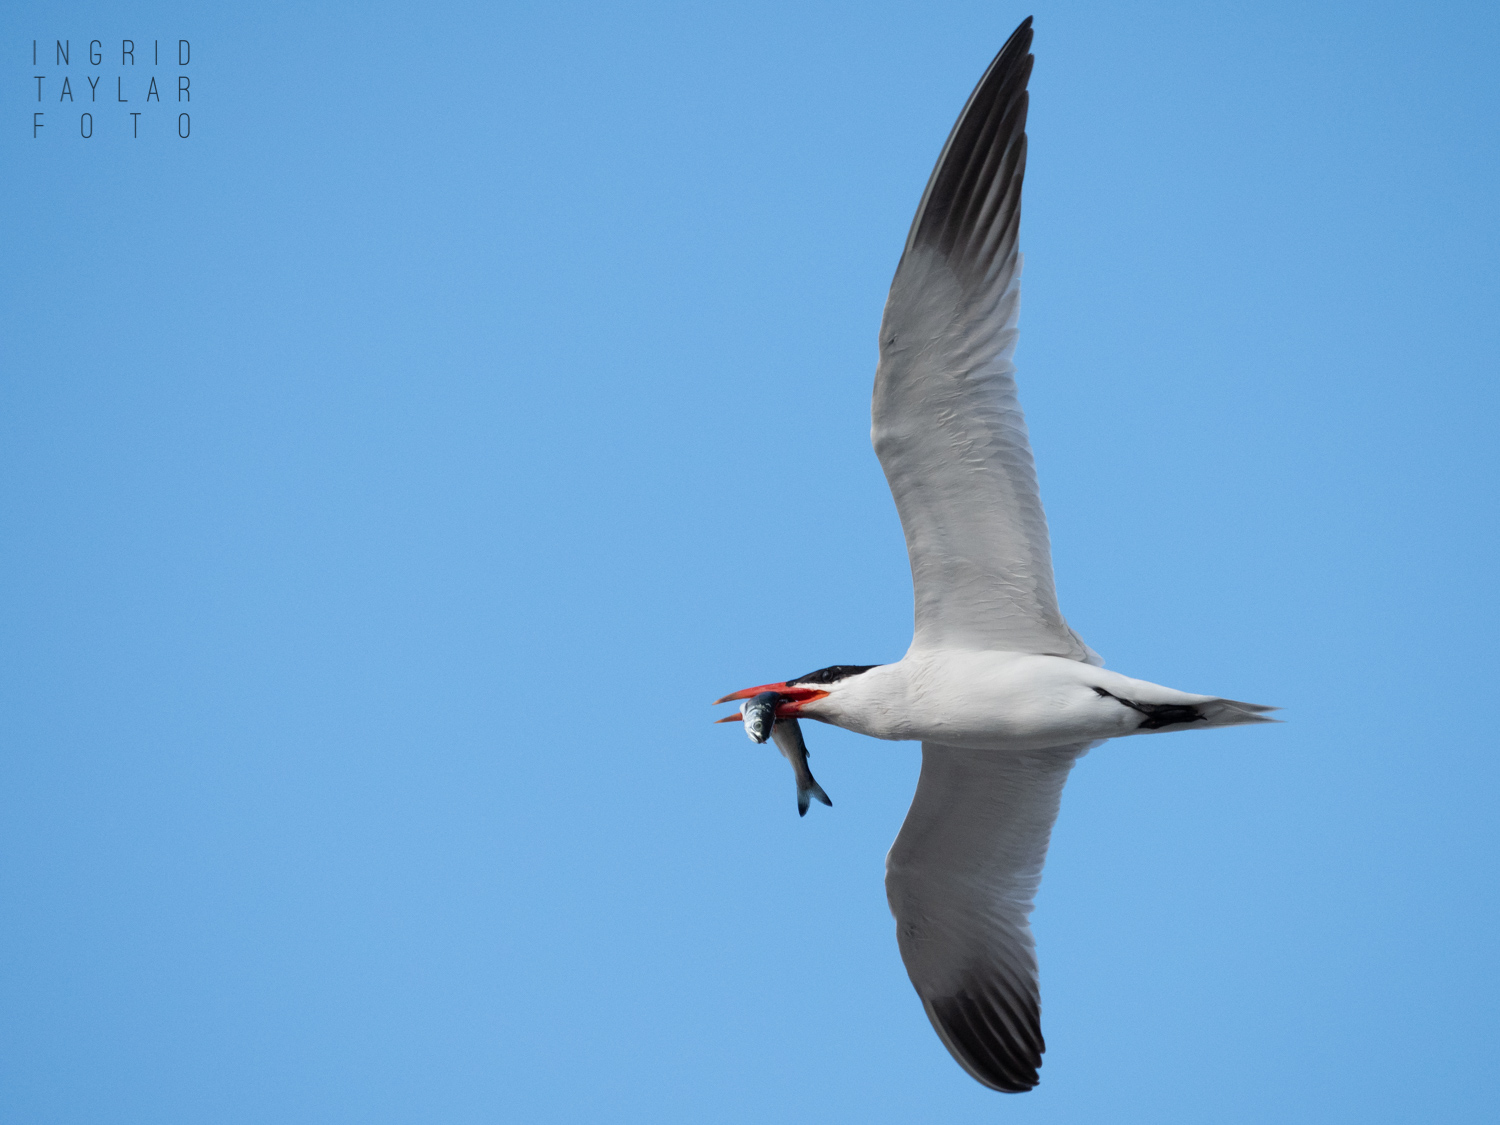 Caspian Tern in Flight with Fish